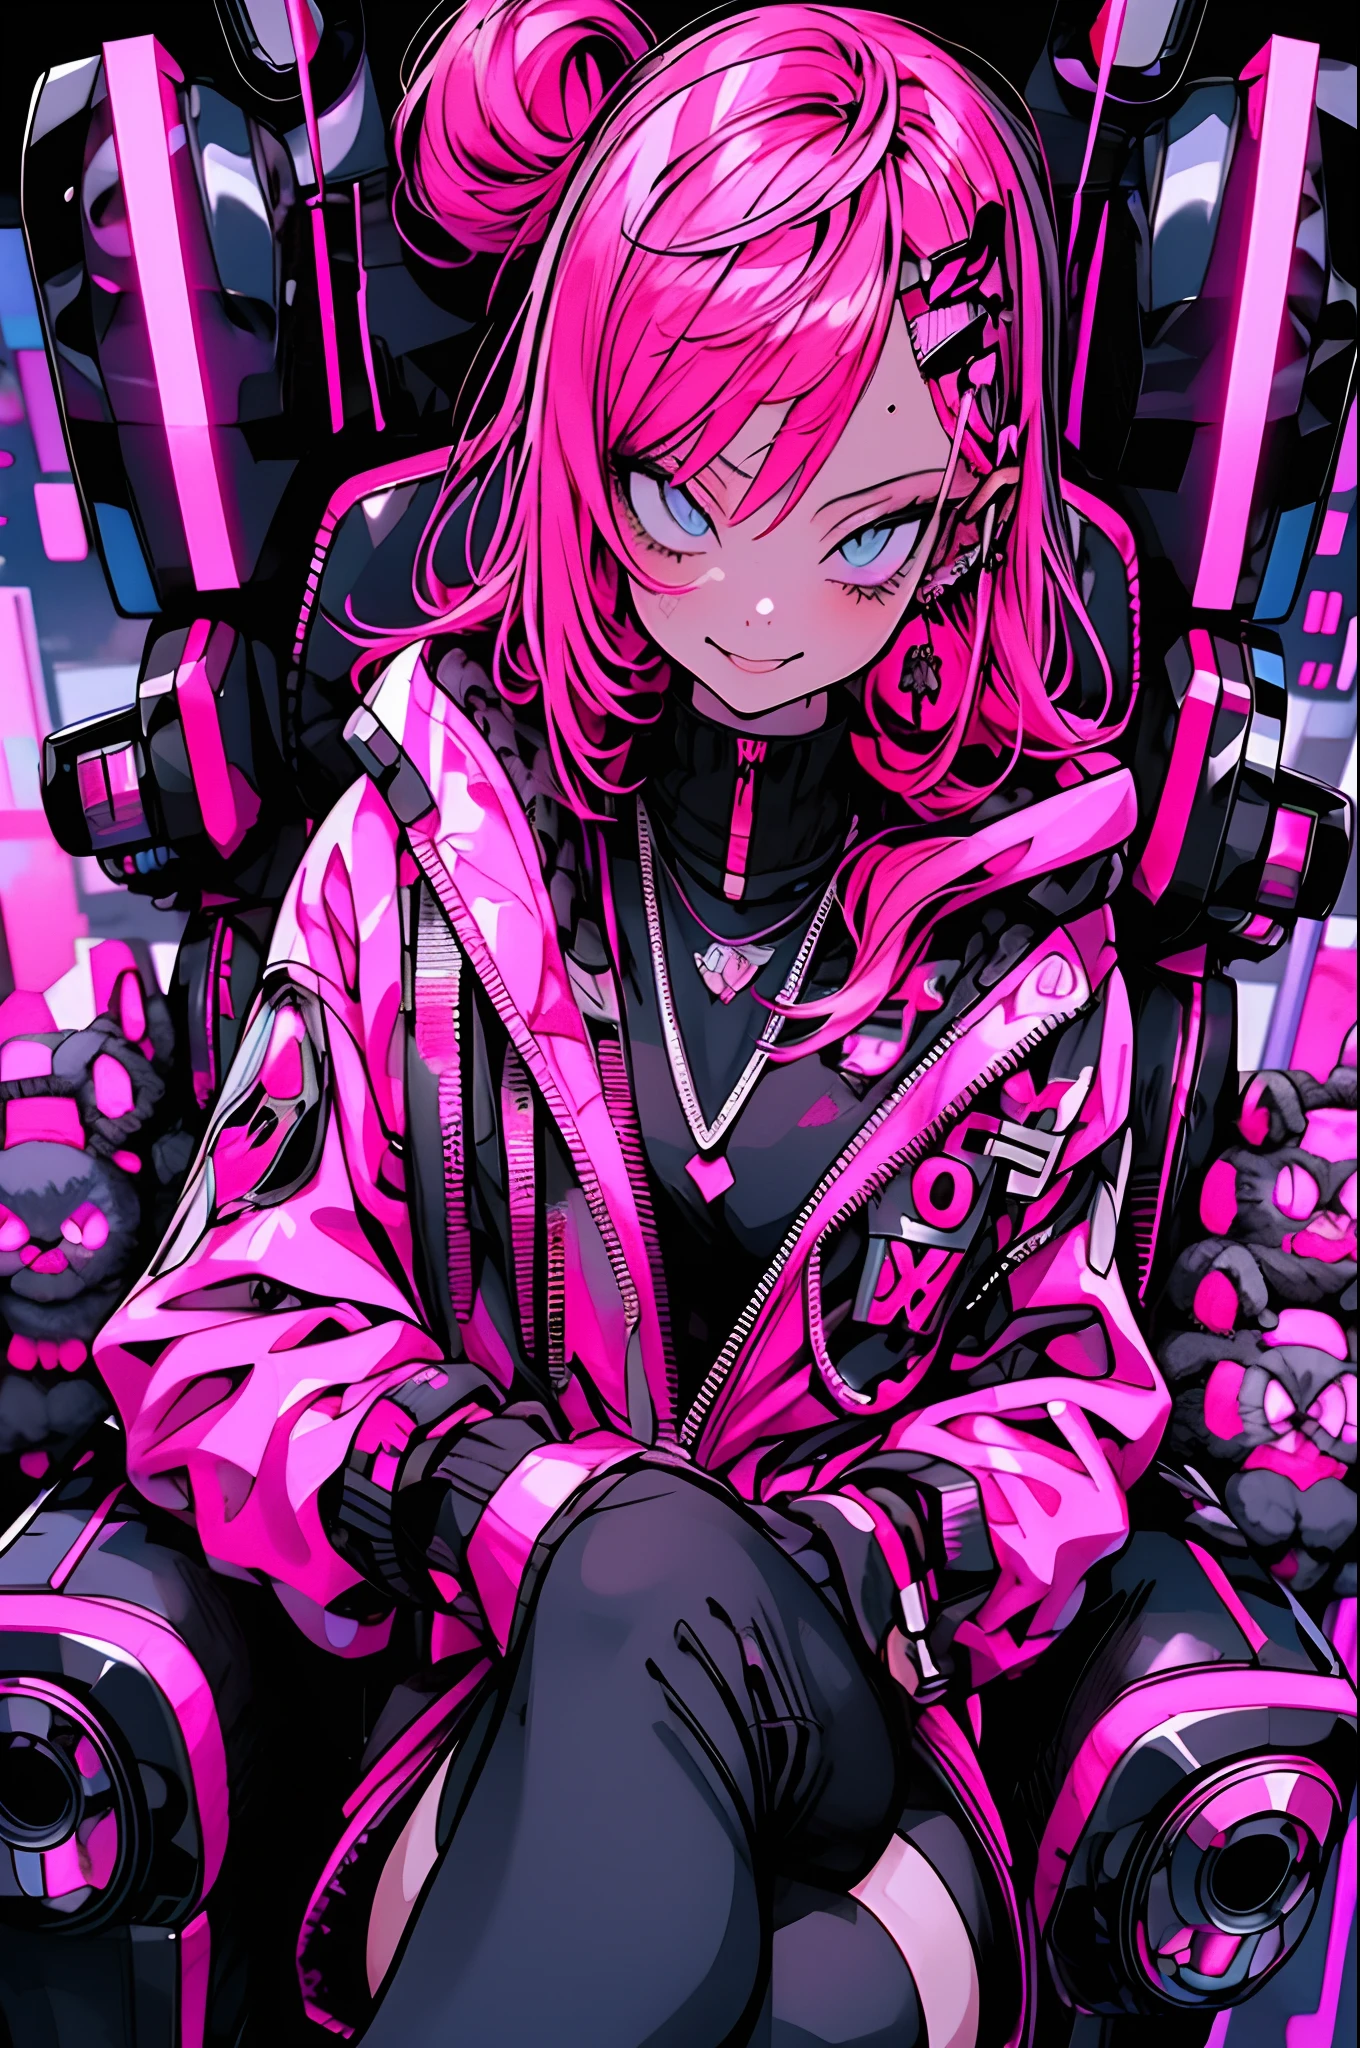 Anime-Mädchen mit rosa Haaren sitzt auf einem Stuhl in einer Neonstadt, großes Lächeln, cyberpunk anime girl in hoodie, cyberpunk anime girl, Anime-Stil 4k, anime cyberpunk art, bestes Anime 4k Konachan-Hintergrundbild, digital cyberpunk anime art, female cyberpunk anime girl, digital cyberpunk - anime art, cyberpunk anime art, anime cyberpunk, cyberpunk streetwear, cyberpunk art style